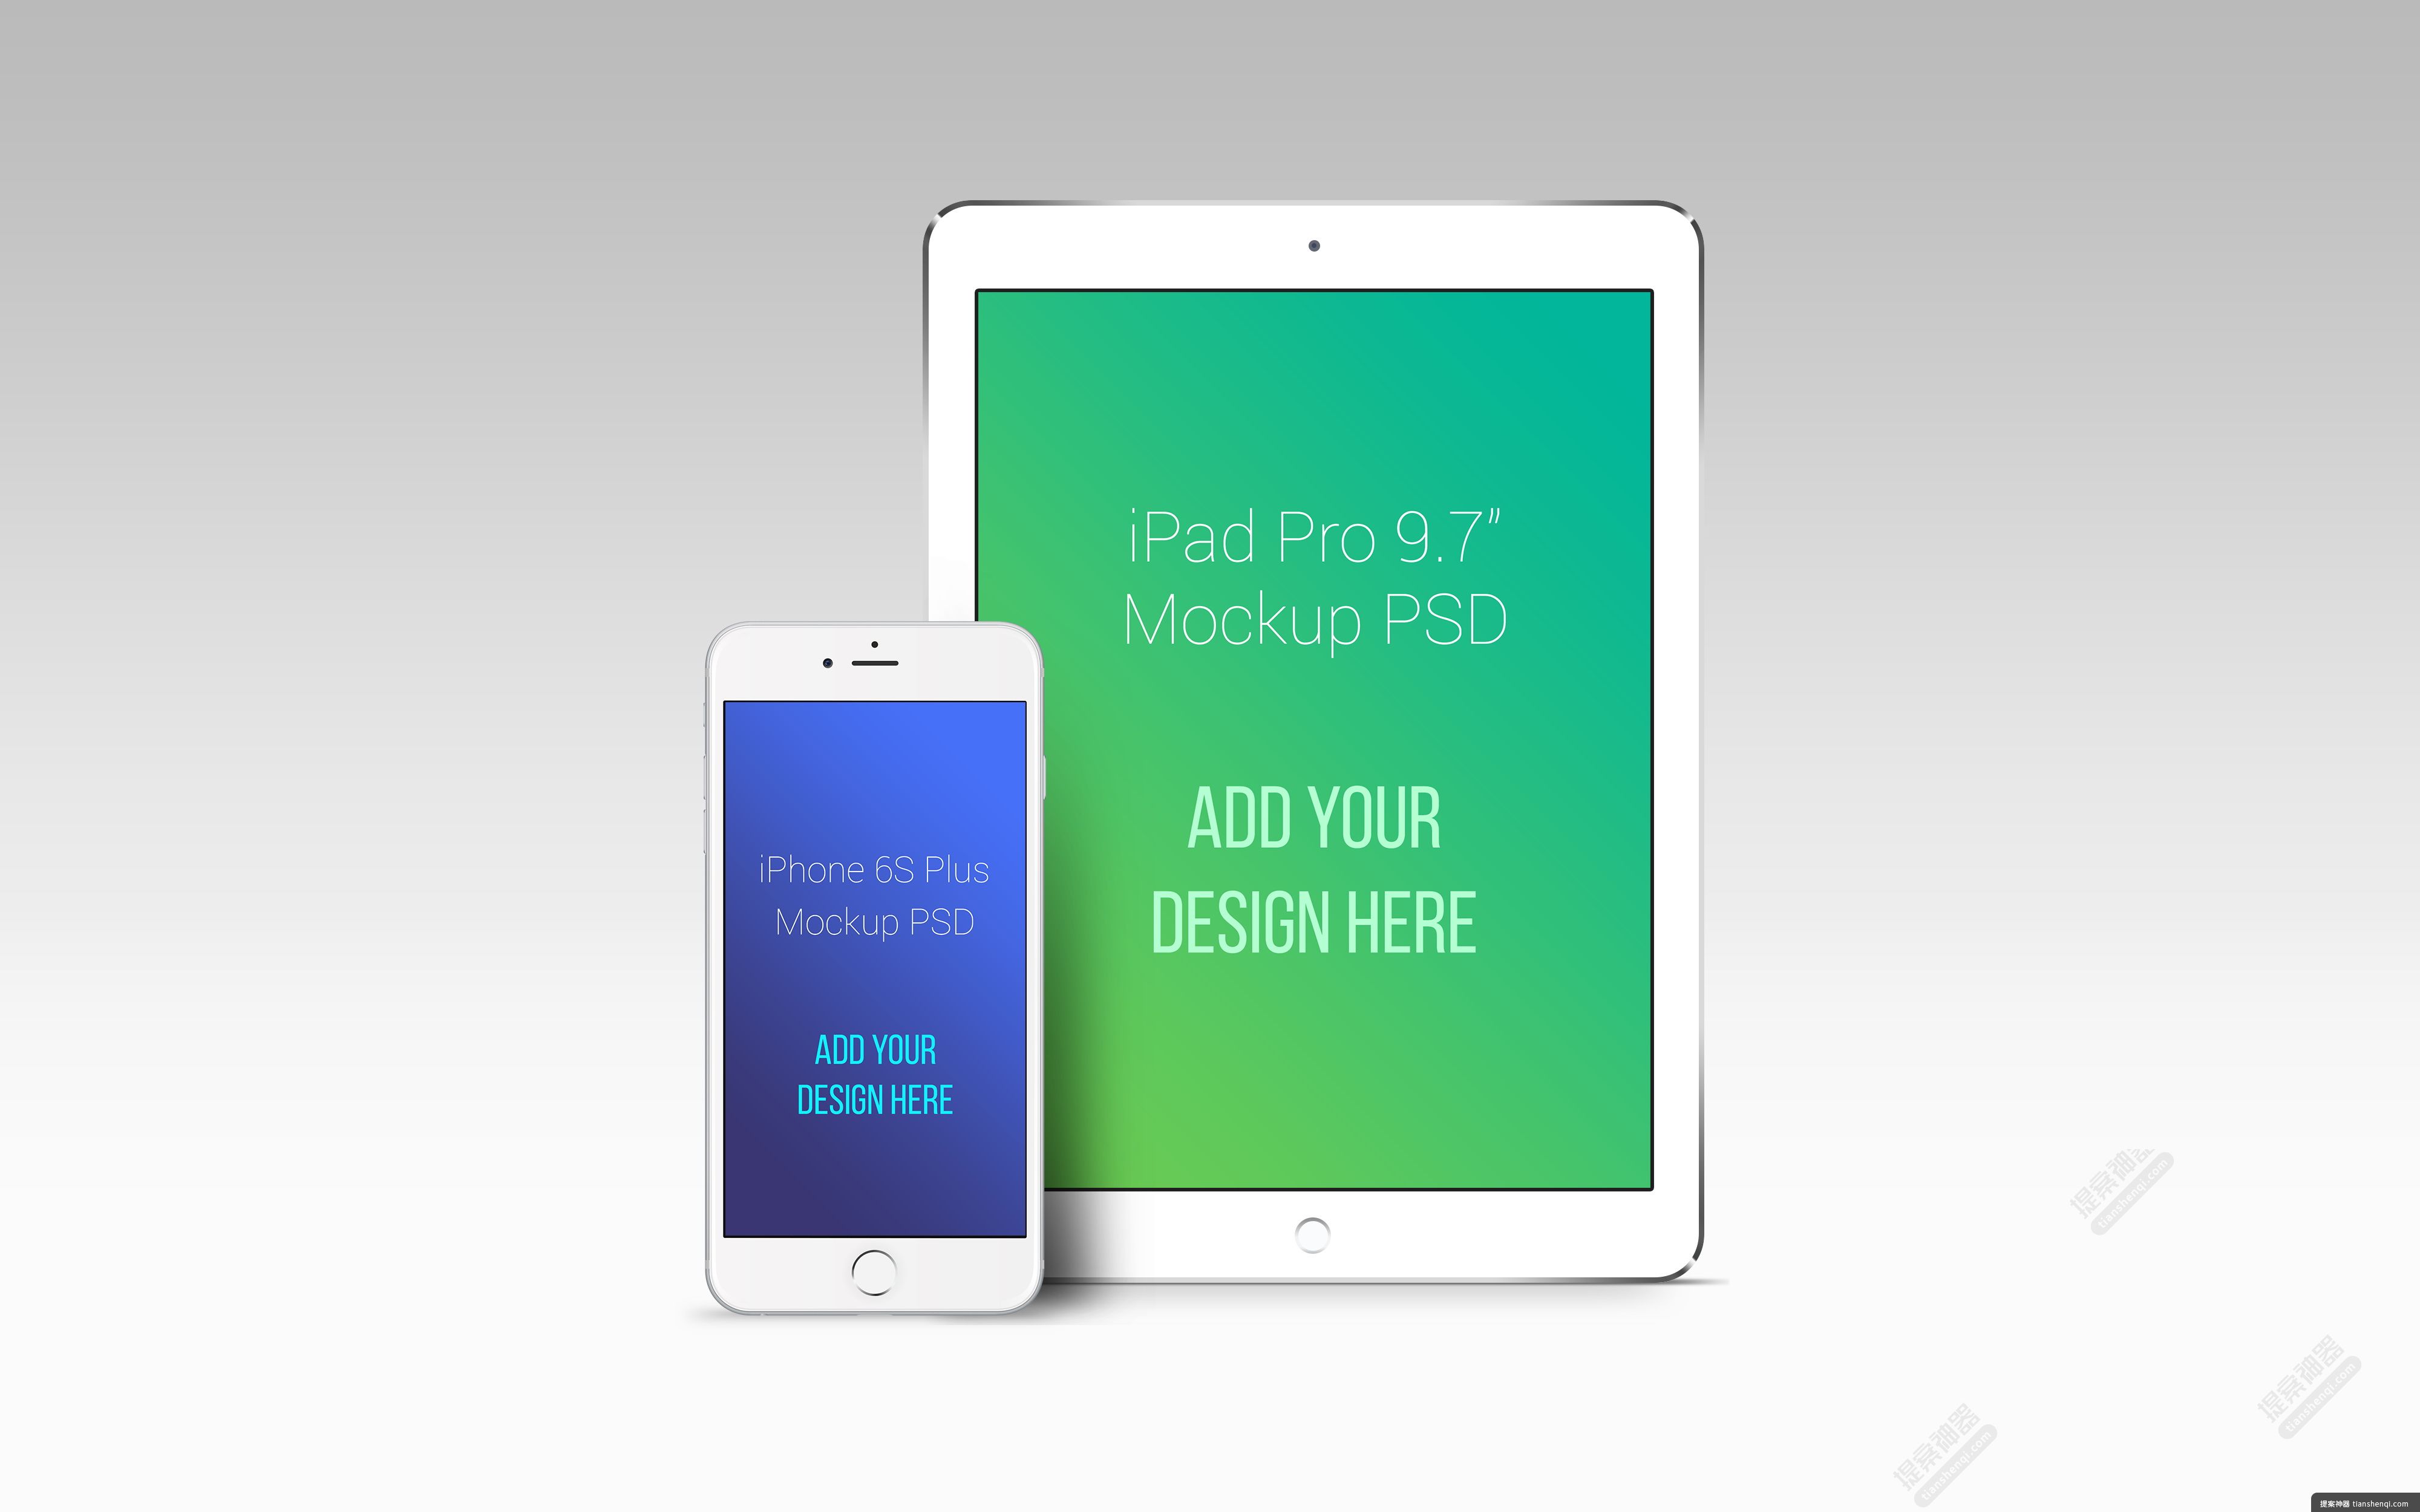 灰白色背景高清简单一台立式iPad Pro与iPhone6s plus组合细节屏幕贴图样机贴图素材